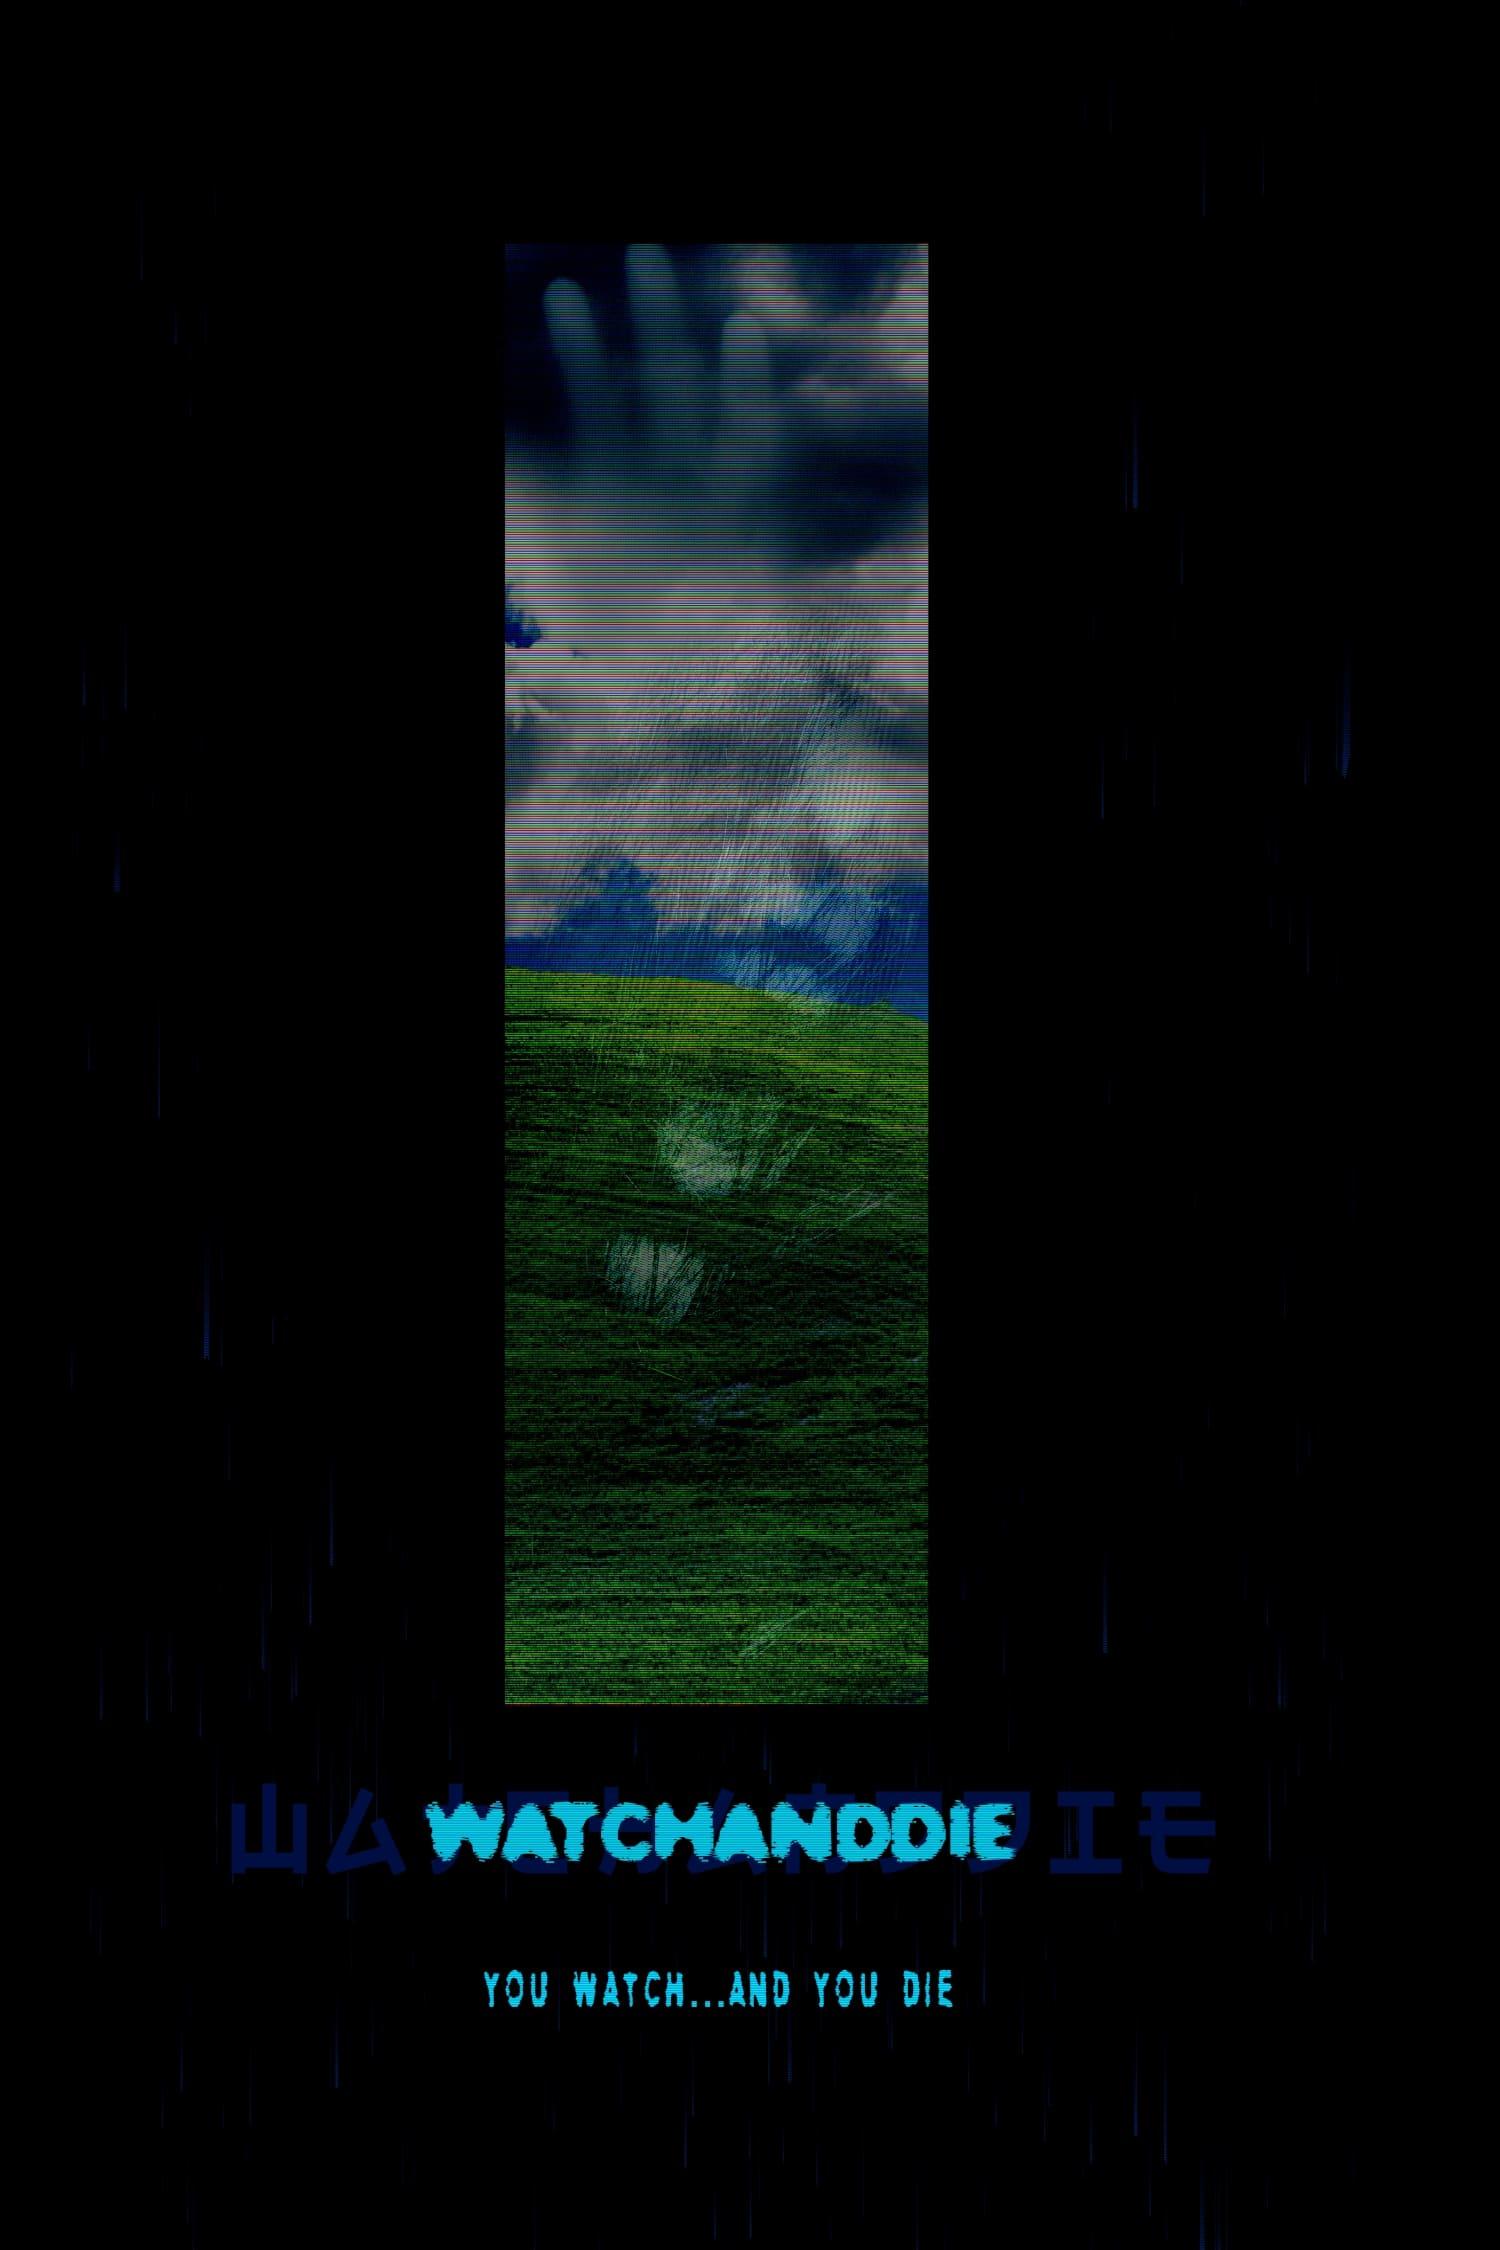 Watchanddie poster